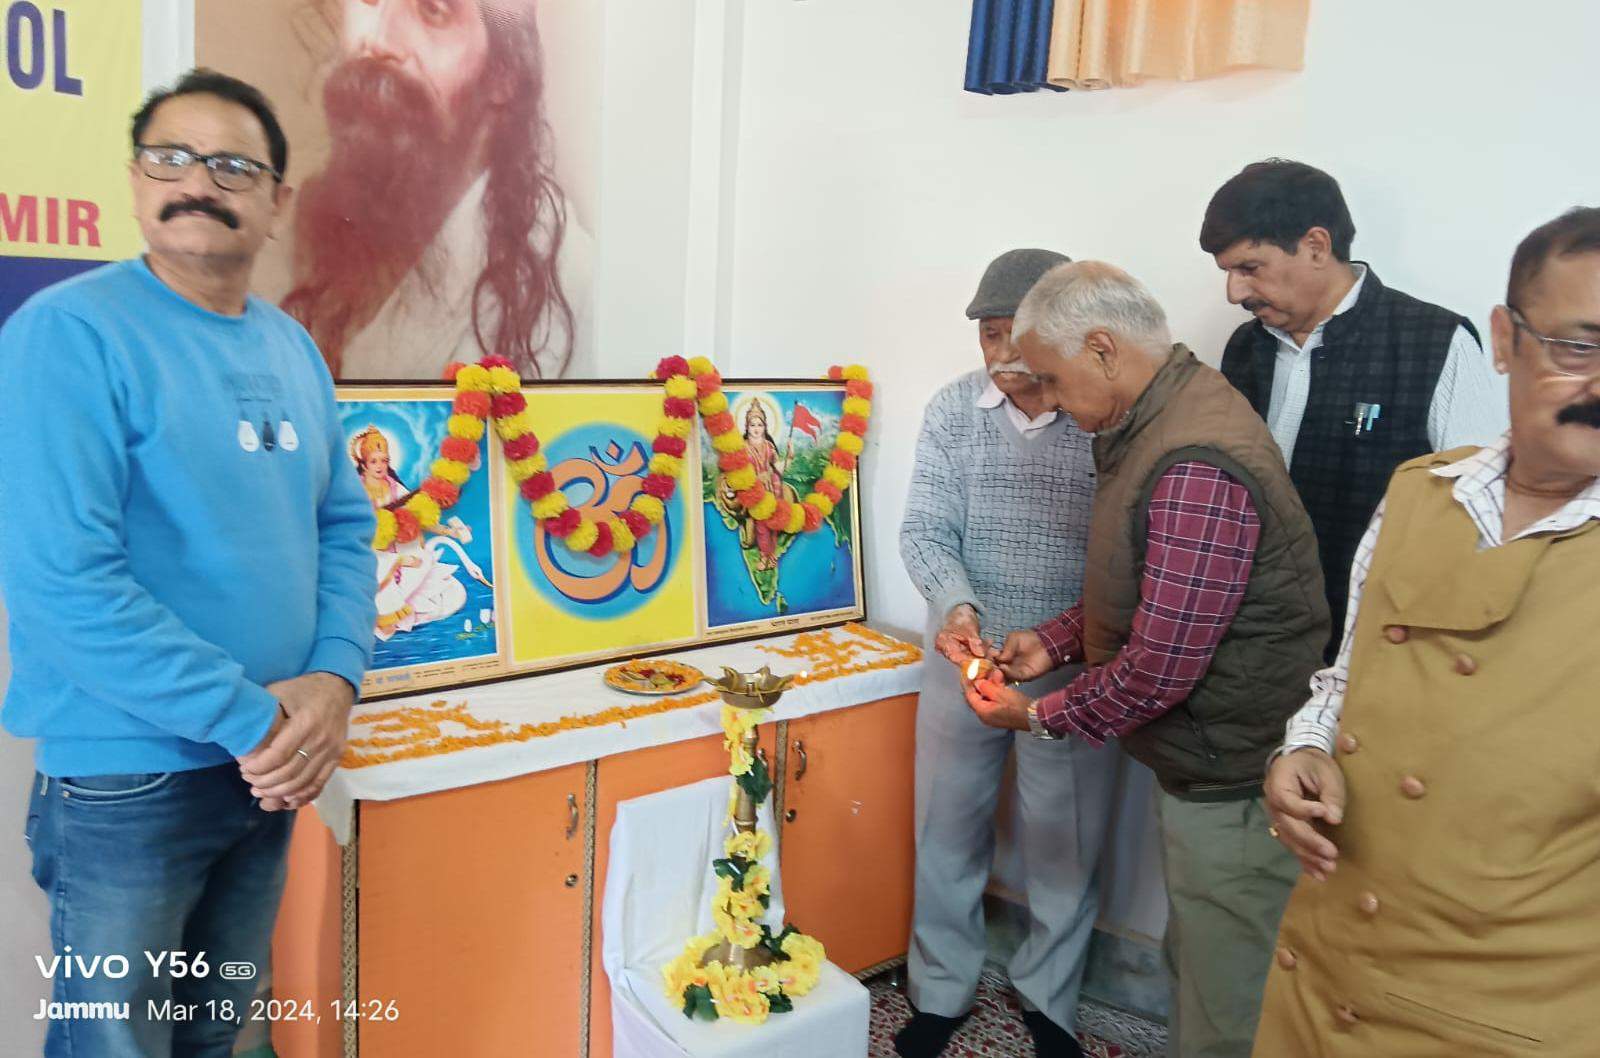 हम चॅरिटेबल ट्रस्ट, राजेंद्र शिक्षण संस्था, ओमकार एज्युकेशन सोसायटी आणि टिळकनगर सार्वजनिक गणेशोत्सव मंडळाच्या सहभागातून जम्मू काश्मीरमध्ये तीन प्रयोग शाळांची उभारणी